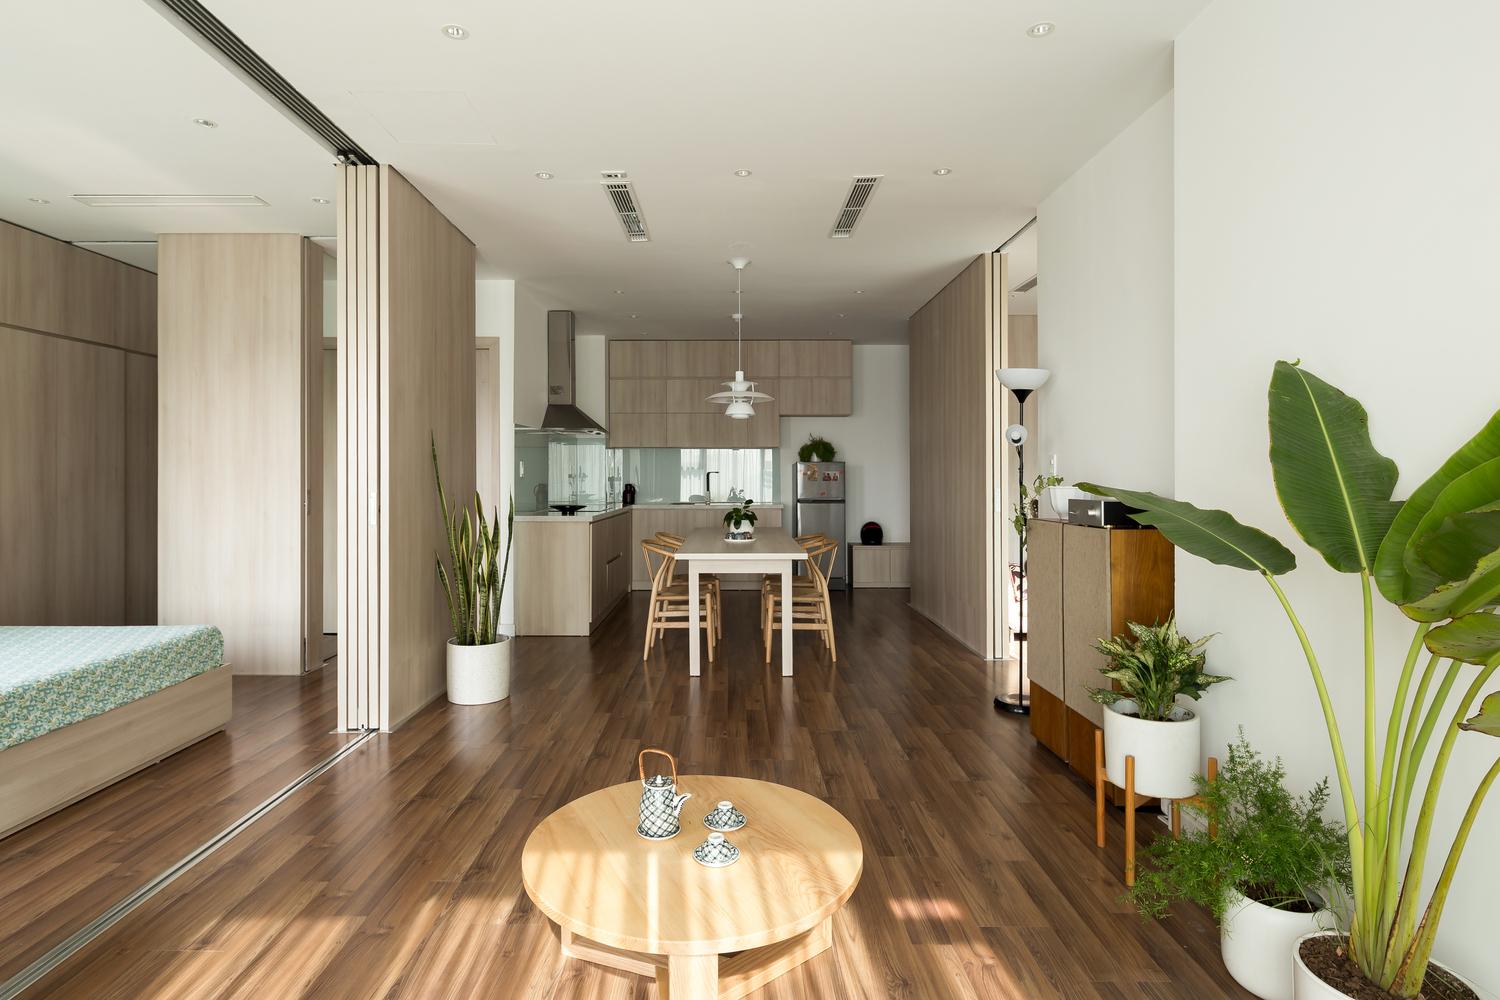 越南河內住宅拆除房間牆壁 為現代人打造舒適生活空間